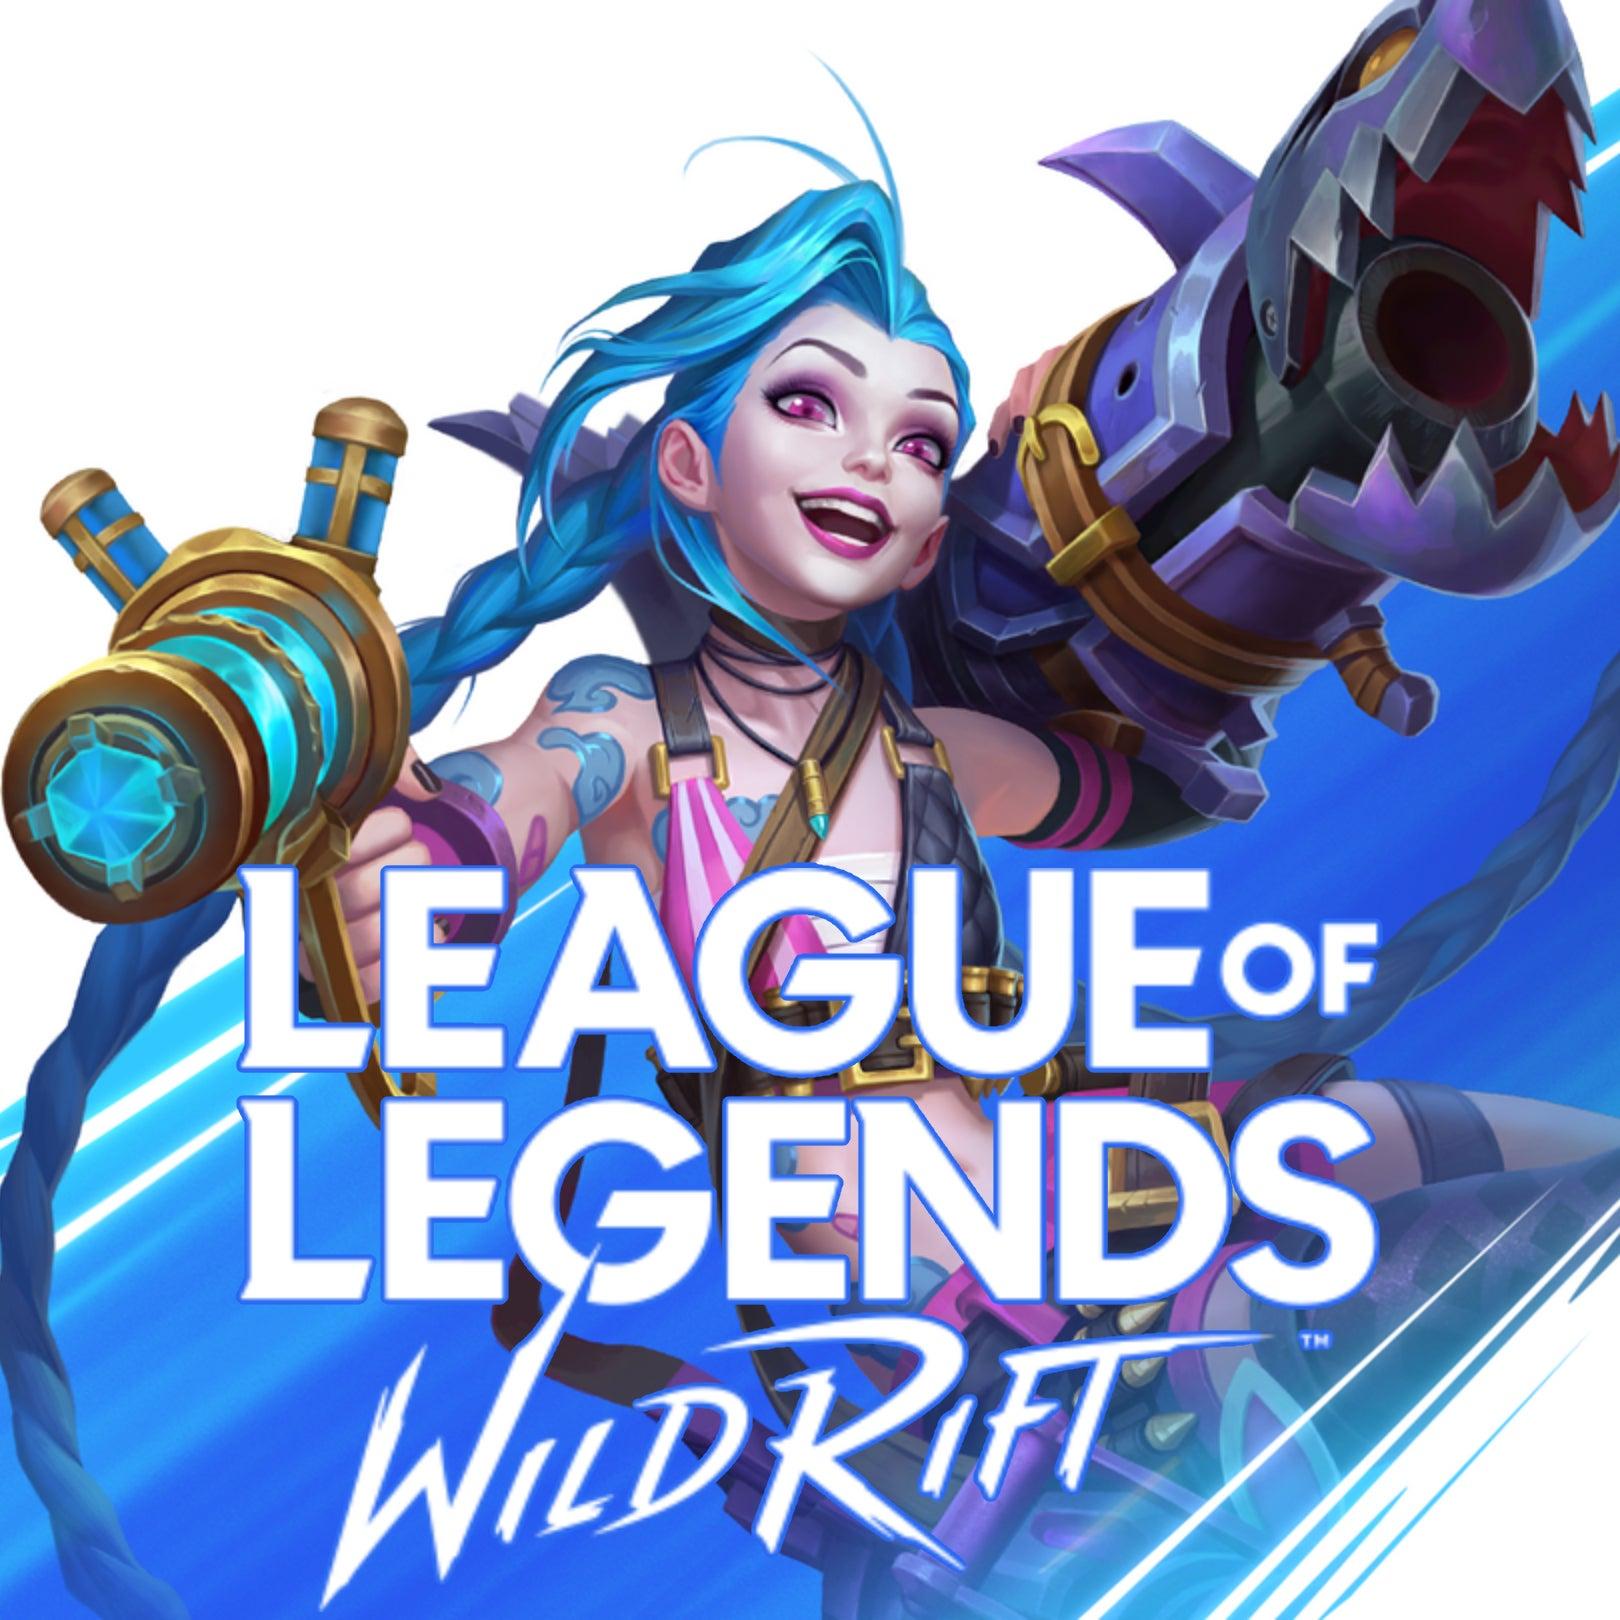 League of Legends : Wild Rift